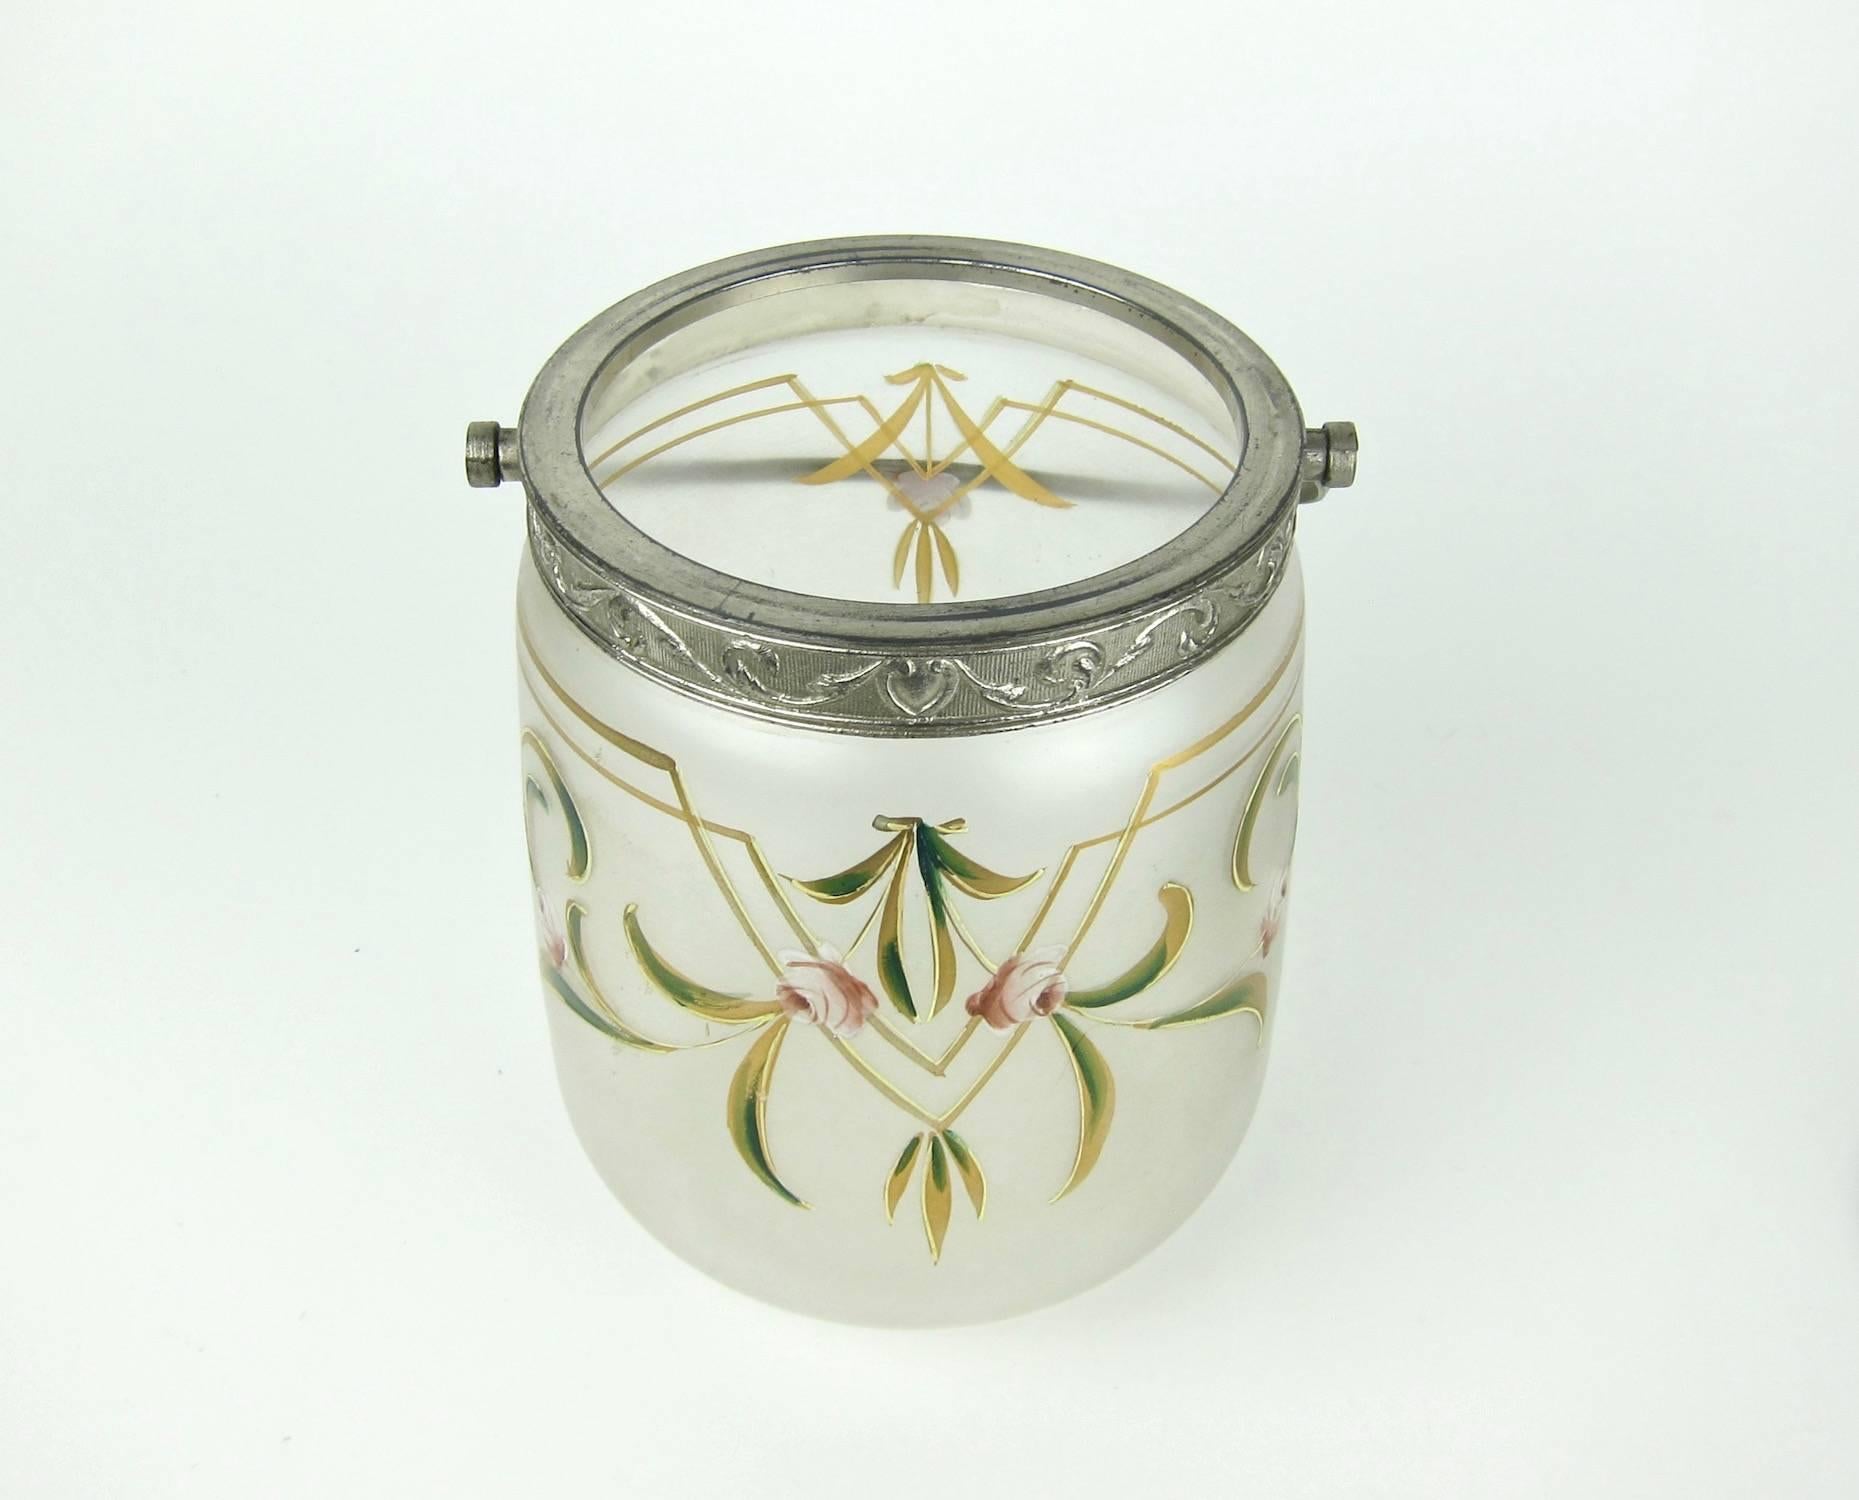 French Antique Glass Biscuit Barrel / Cookie Jar with Art Nouveau Enamel Decoration